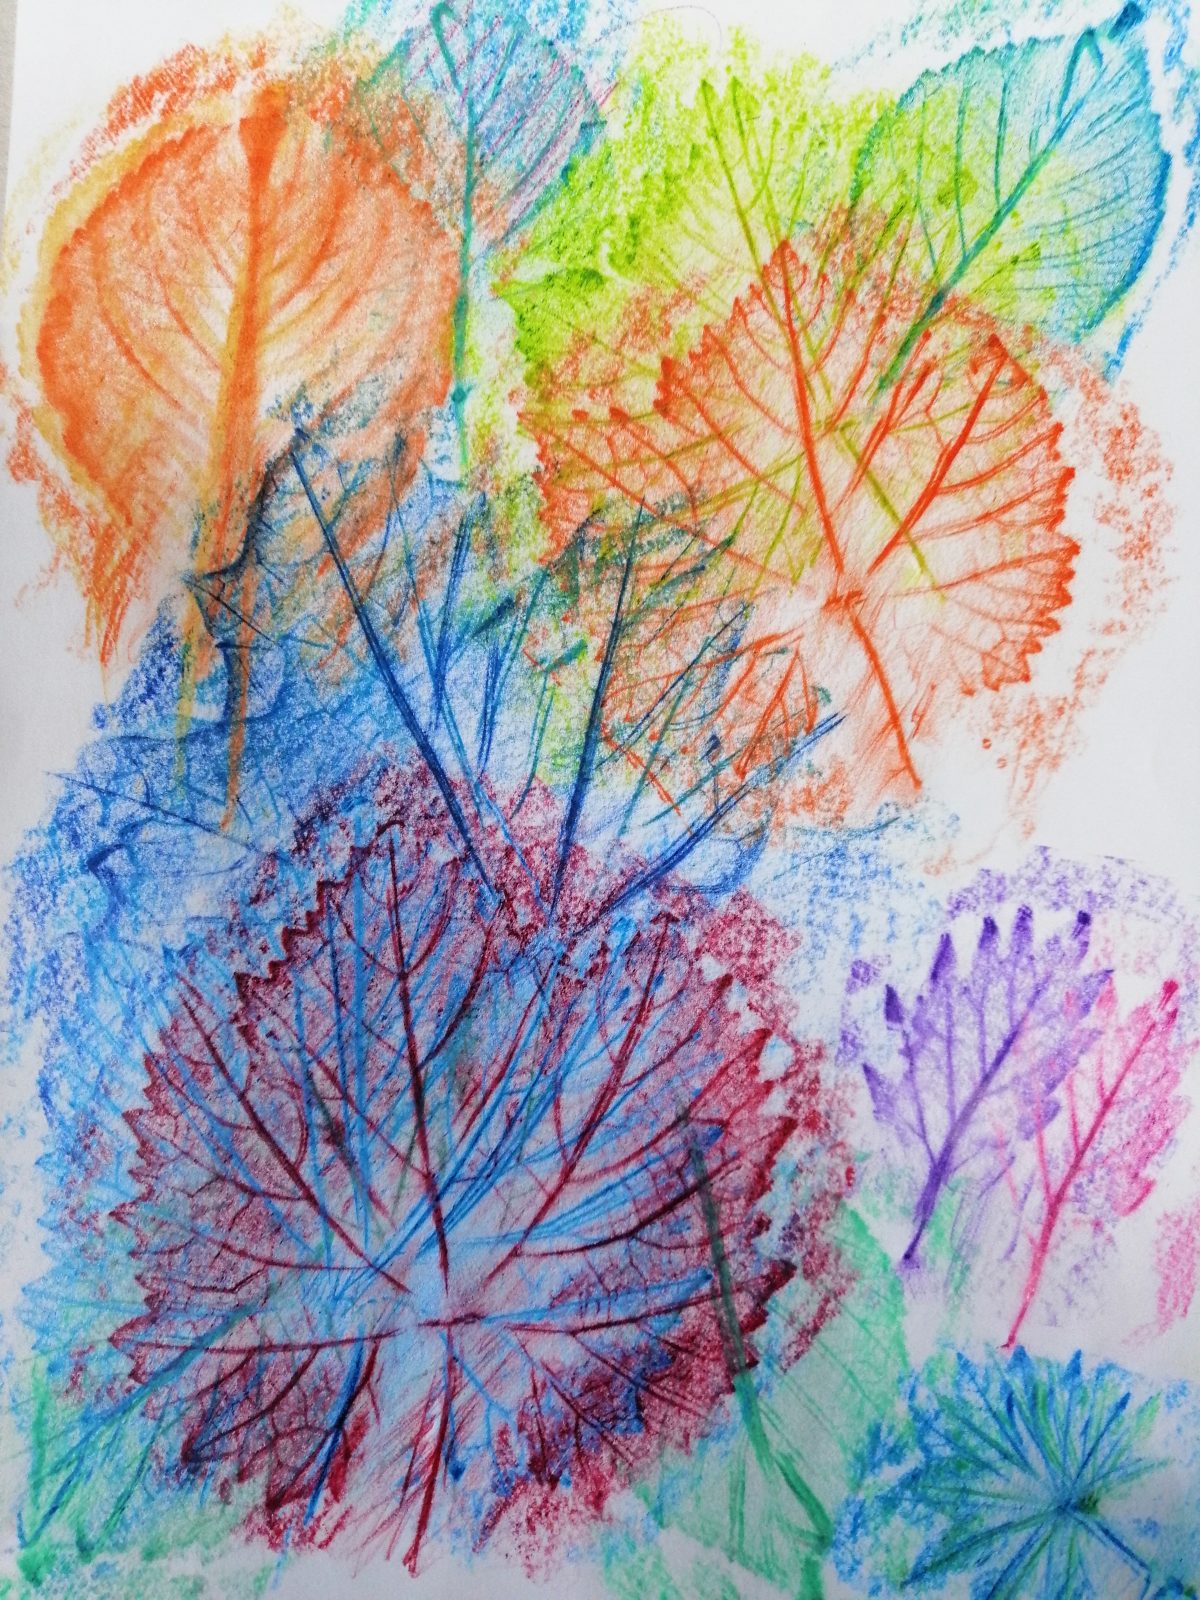 Kompozycja plastyczna struktur różnych jesiennych liści w układzie rytmicznym. Praca wykonana w technice frotażu z użyciem barw ciepłych i zimnych.